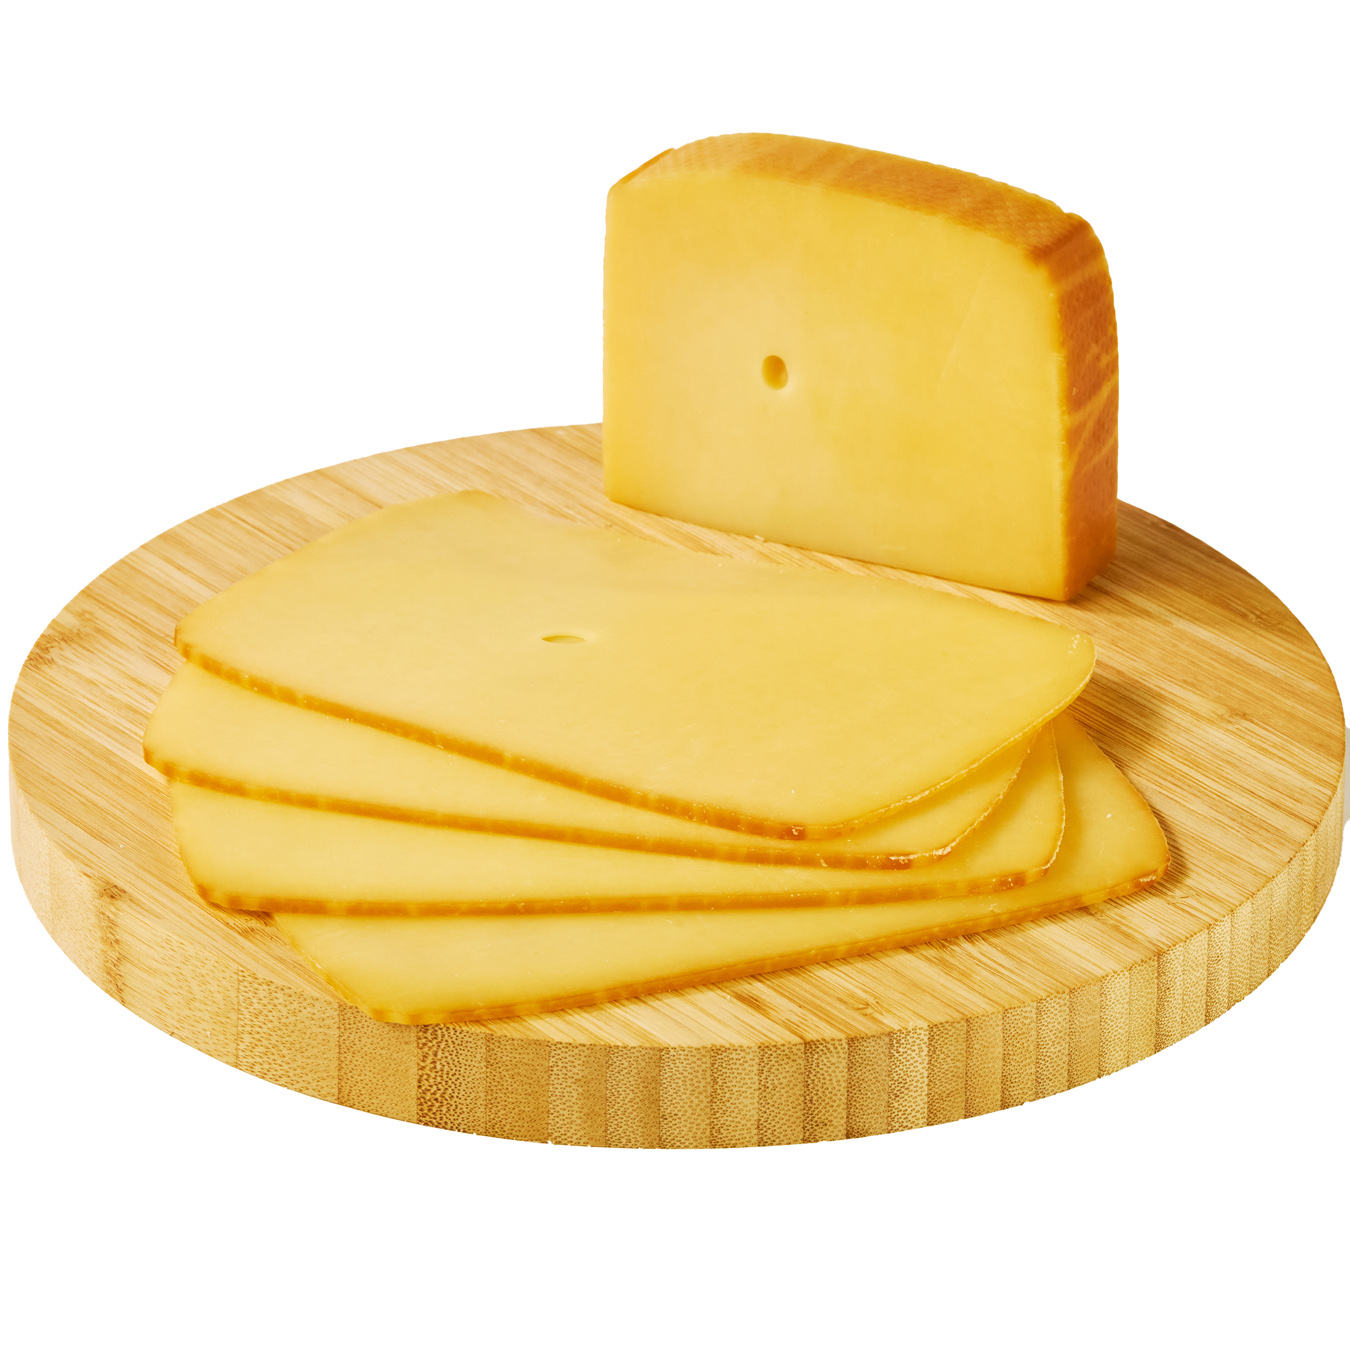 Prego Brenton cheese smoked 45%